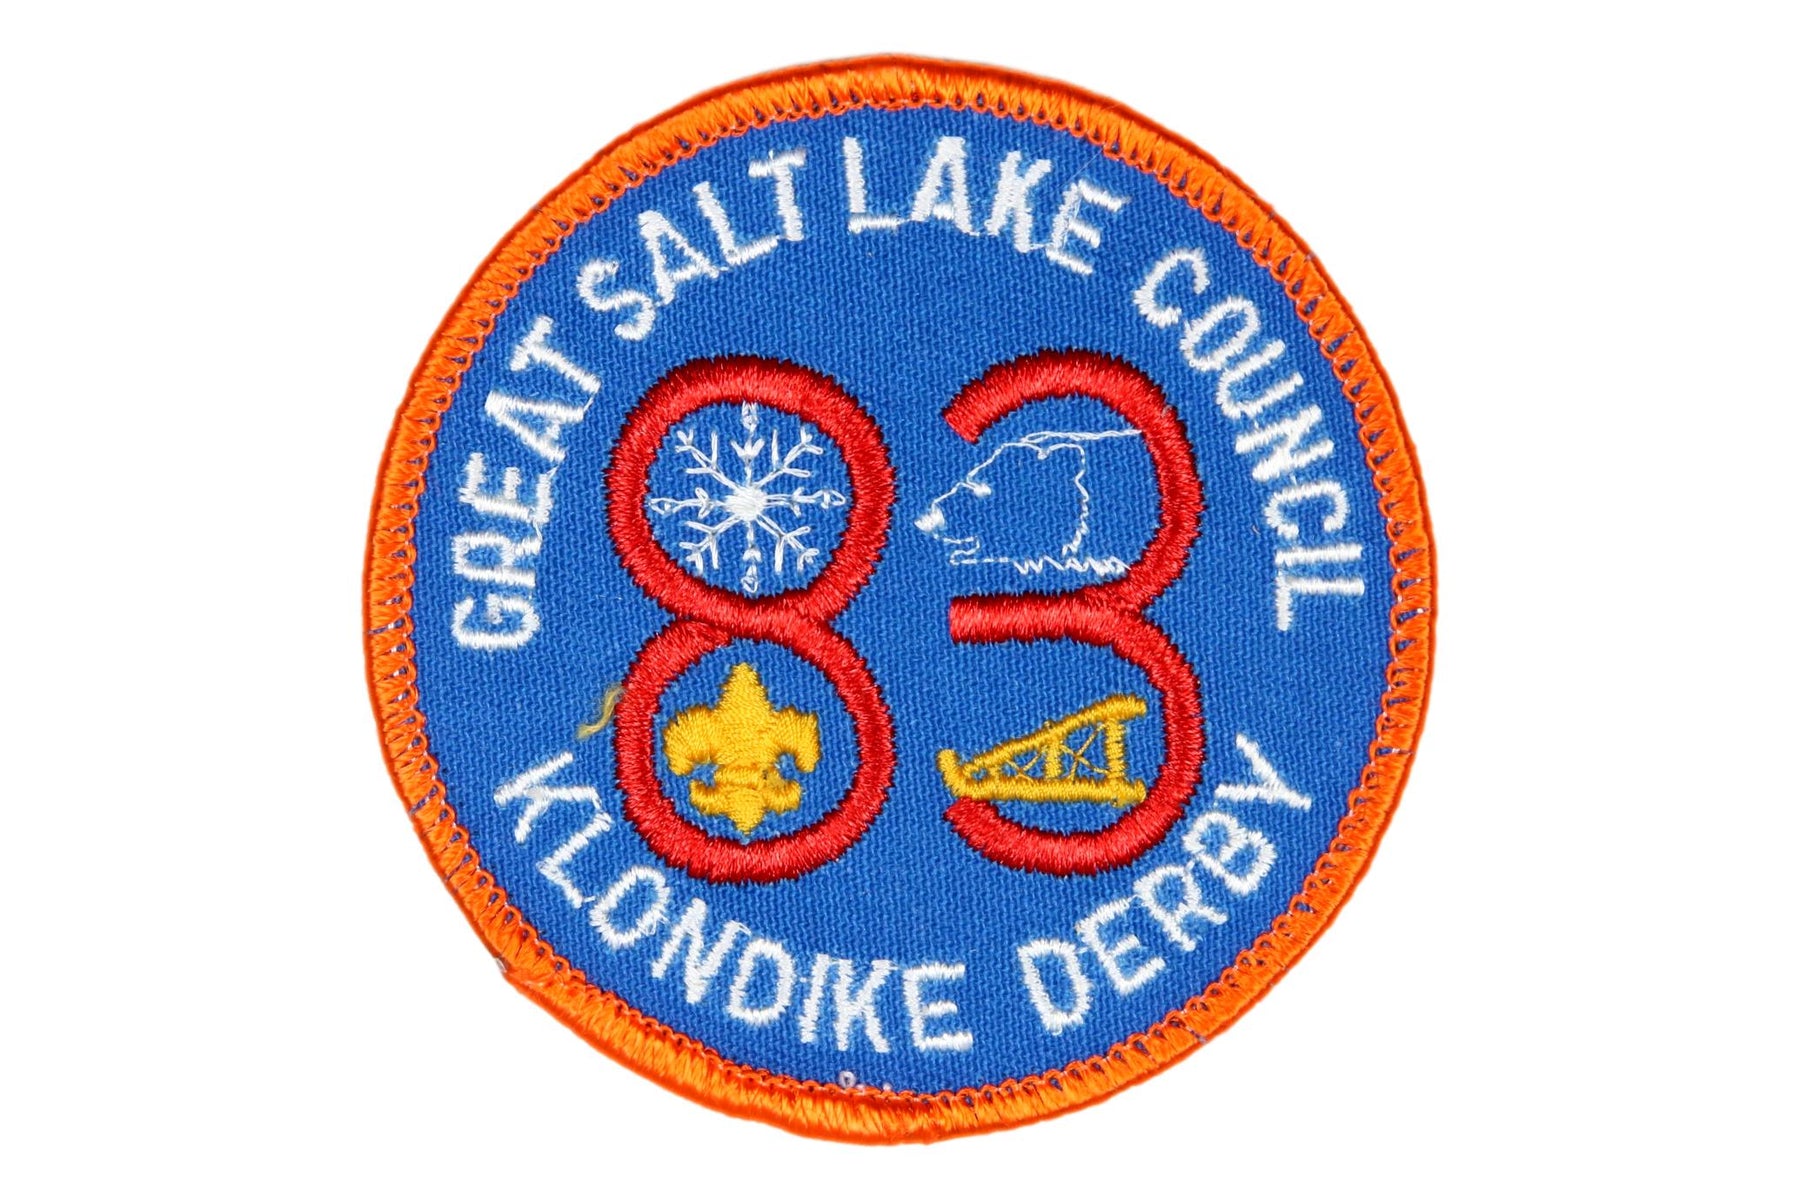 1983 Great Salt Lake Klondike Derby Patch